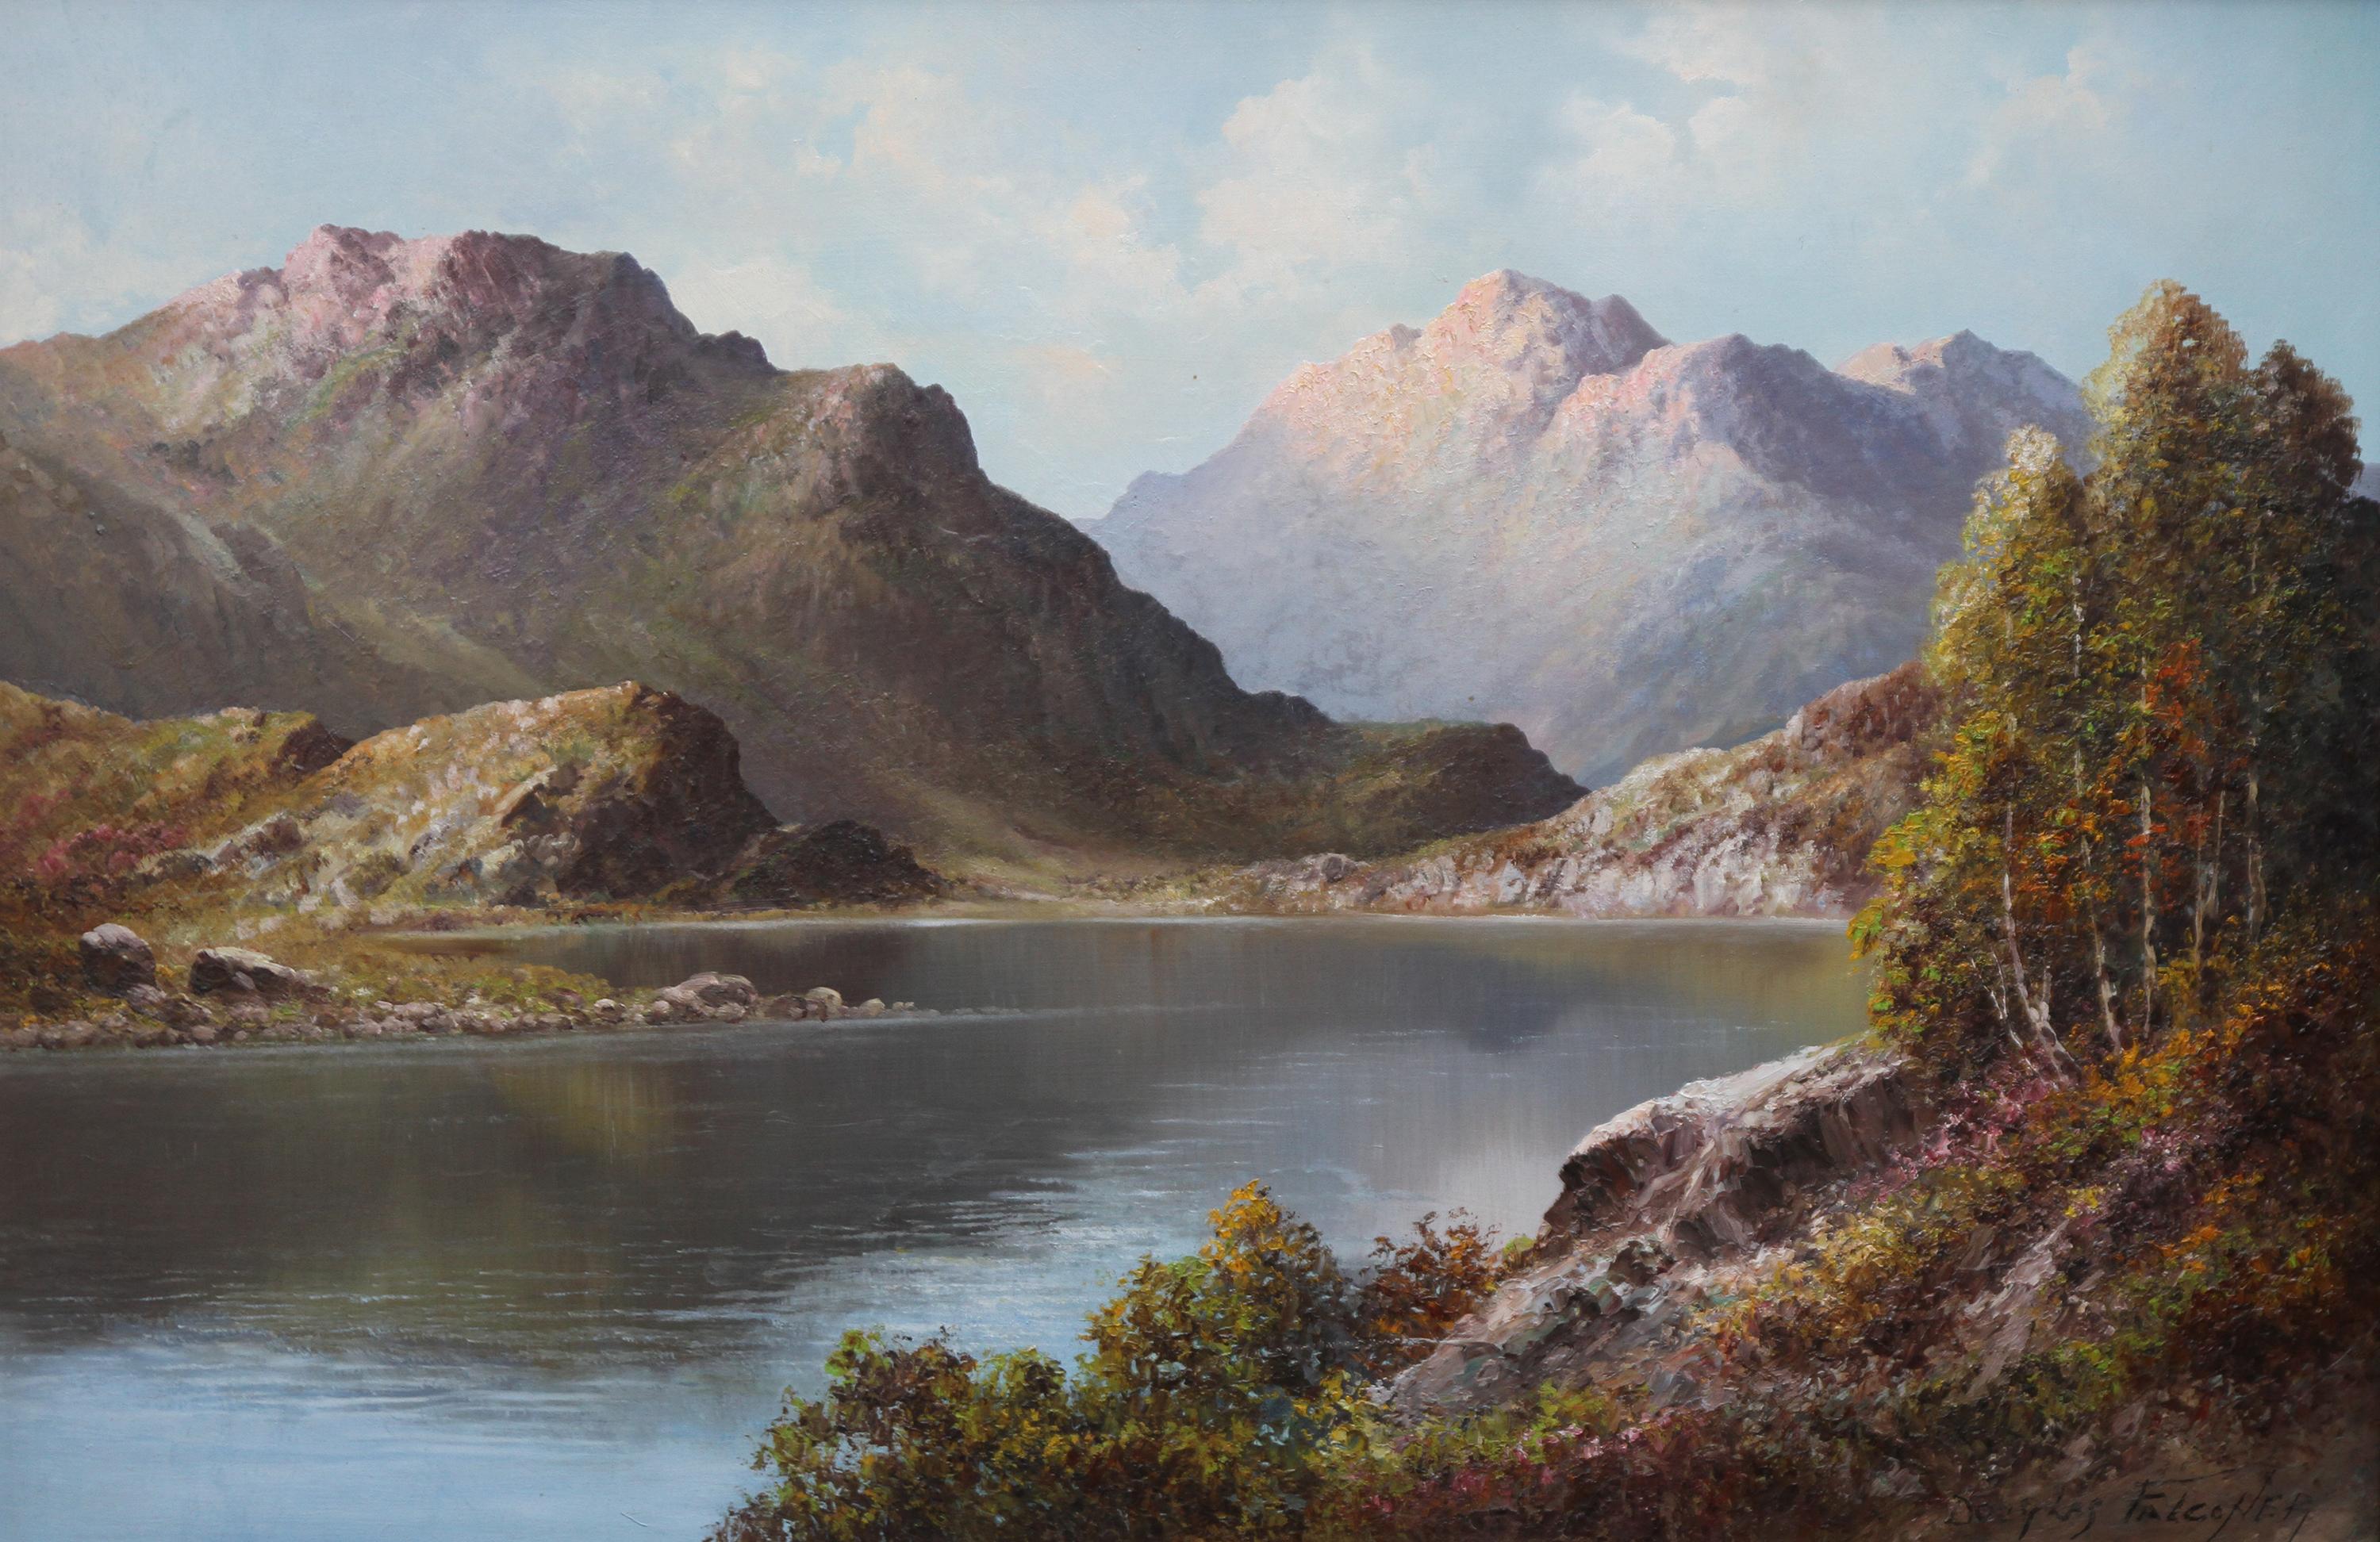 Douglas Falconer Landscape Painting - Loch Alsh - British art oil painting Scottish mountainous landscape NW Scotland